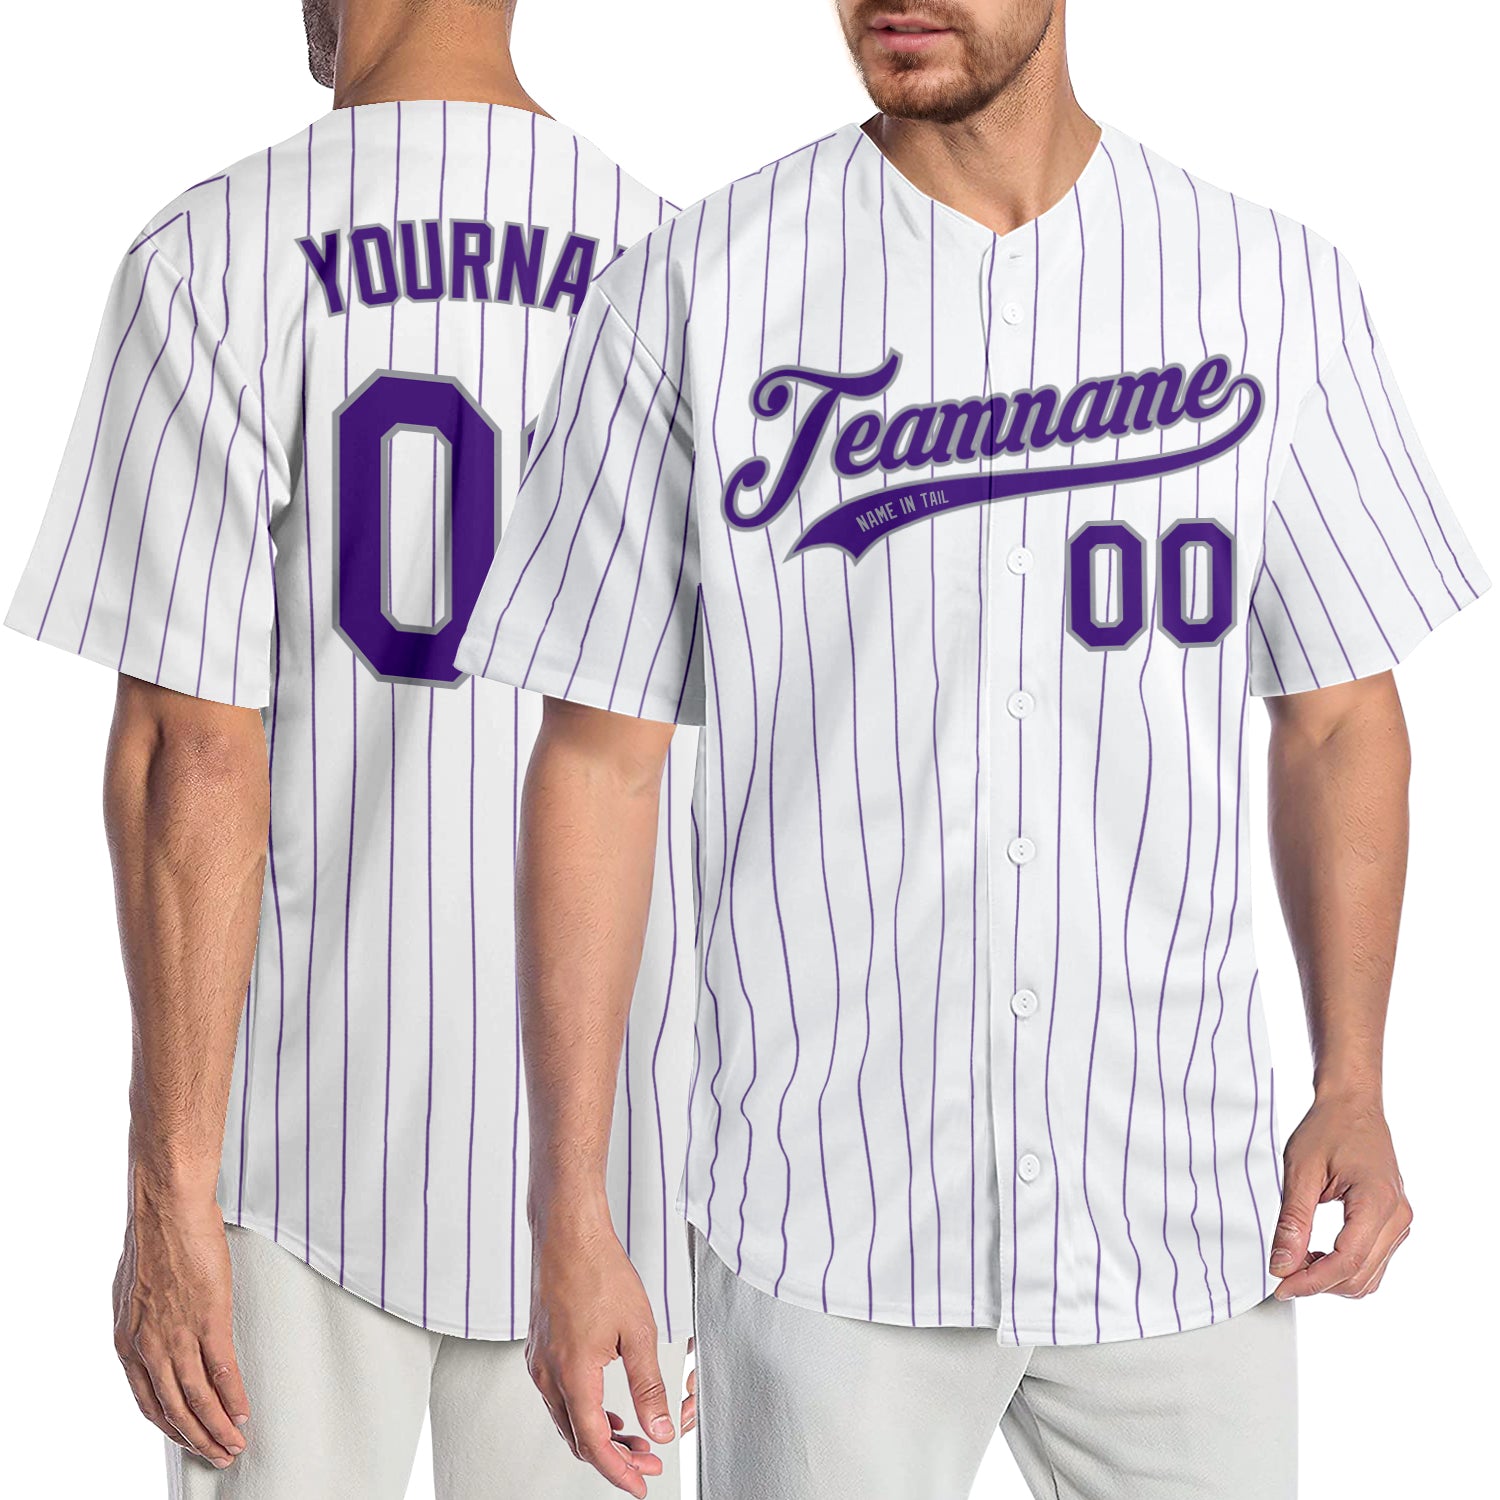  Purple And White Baseball Jersey